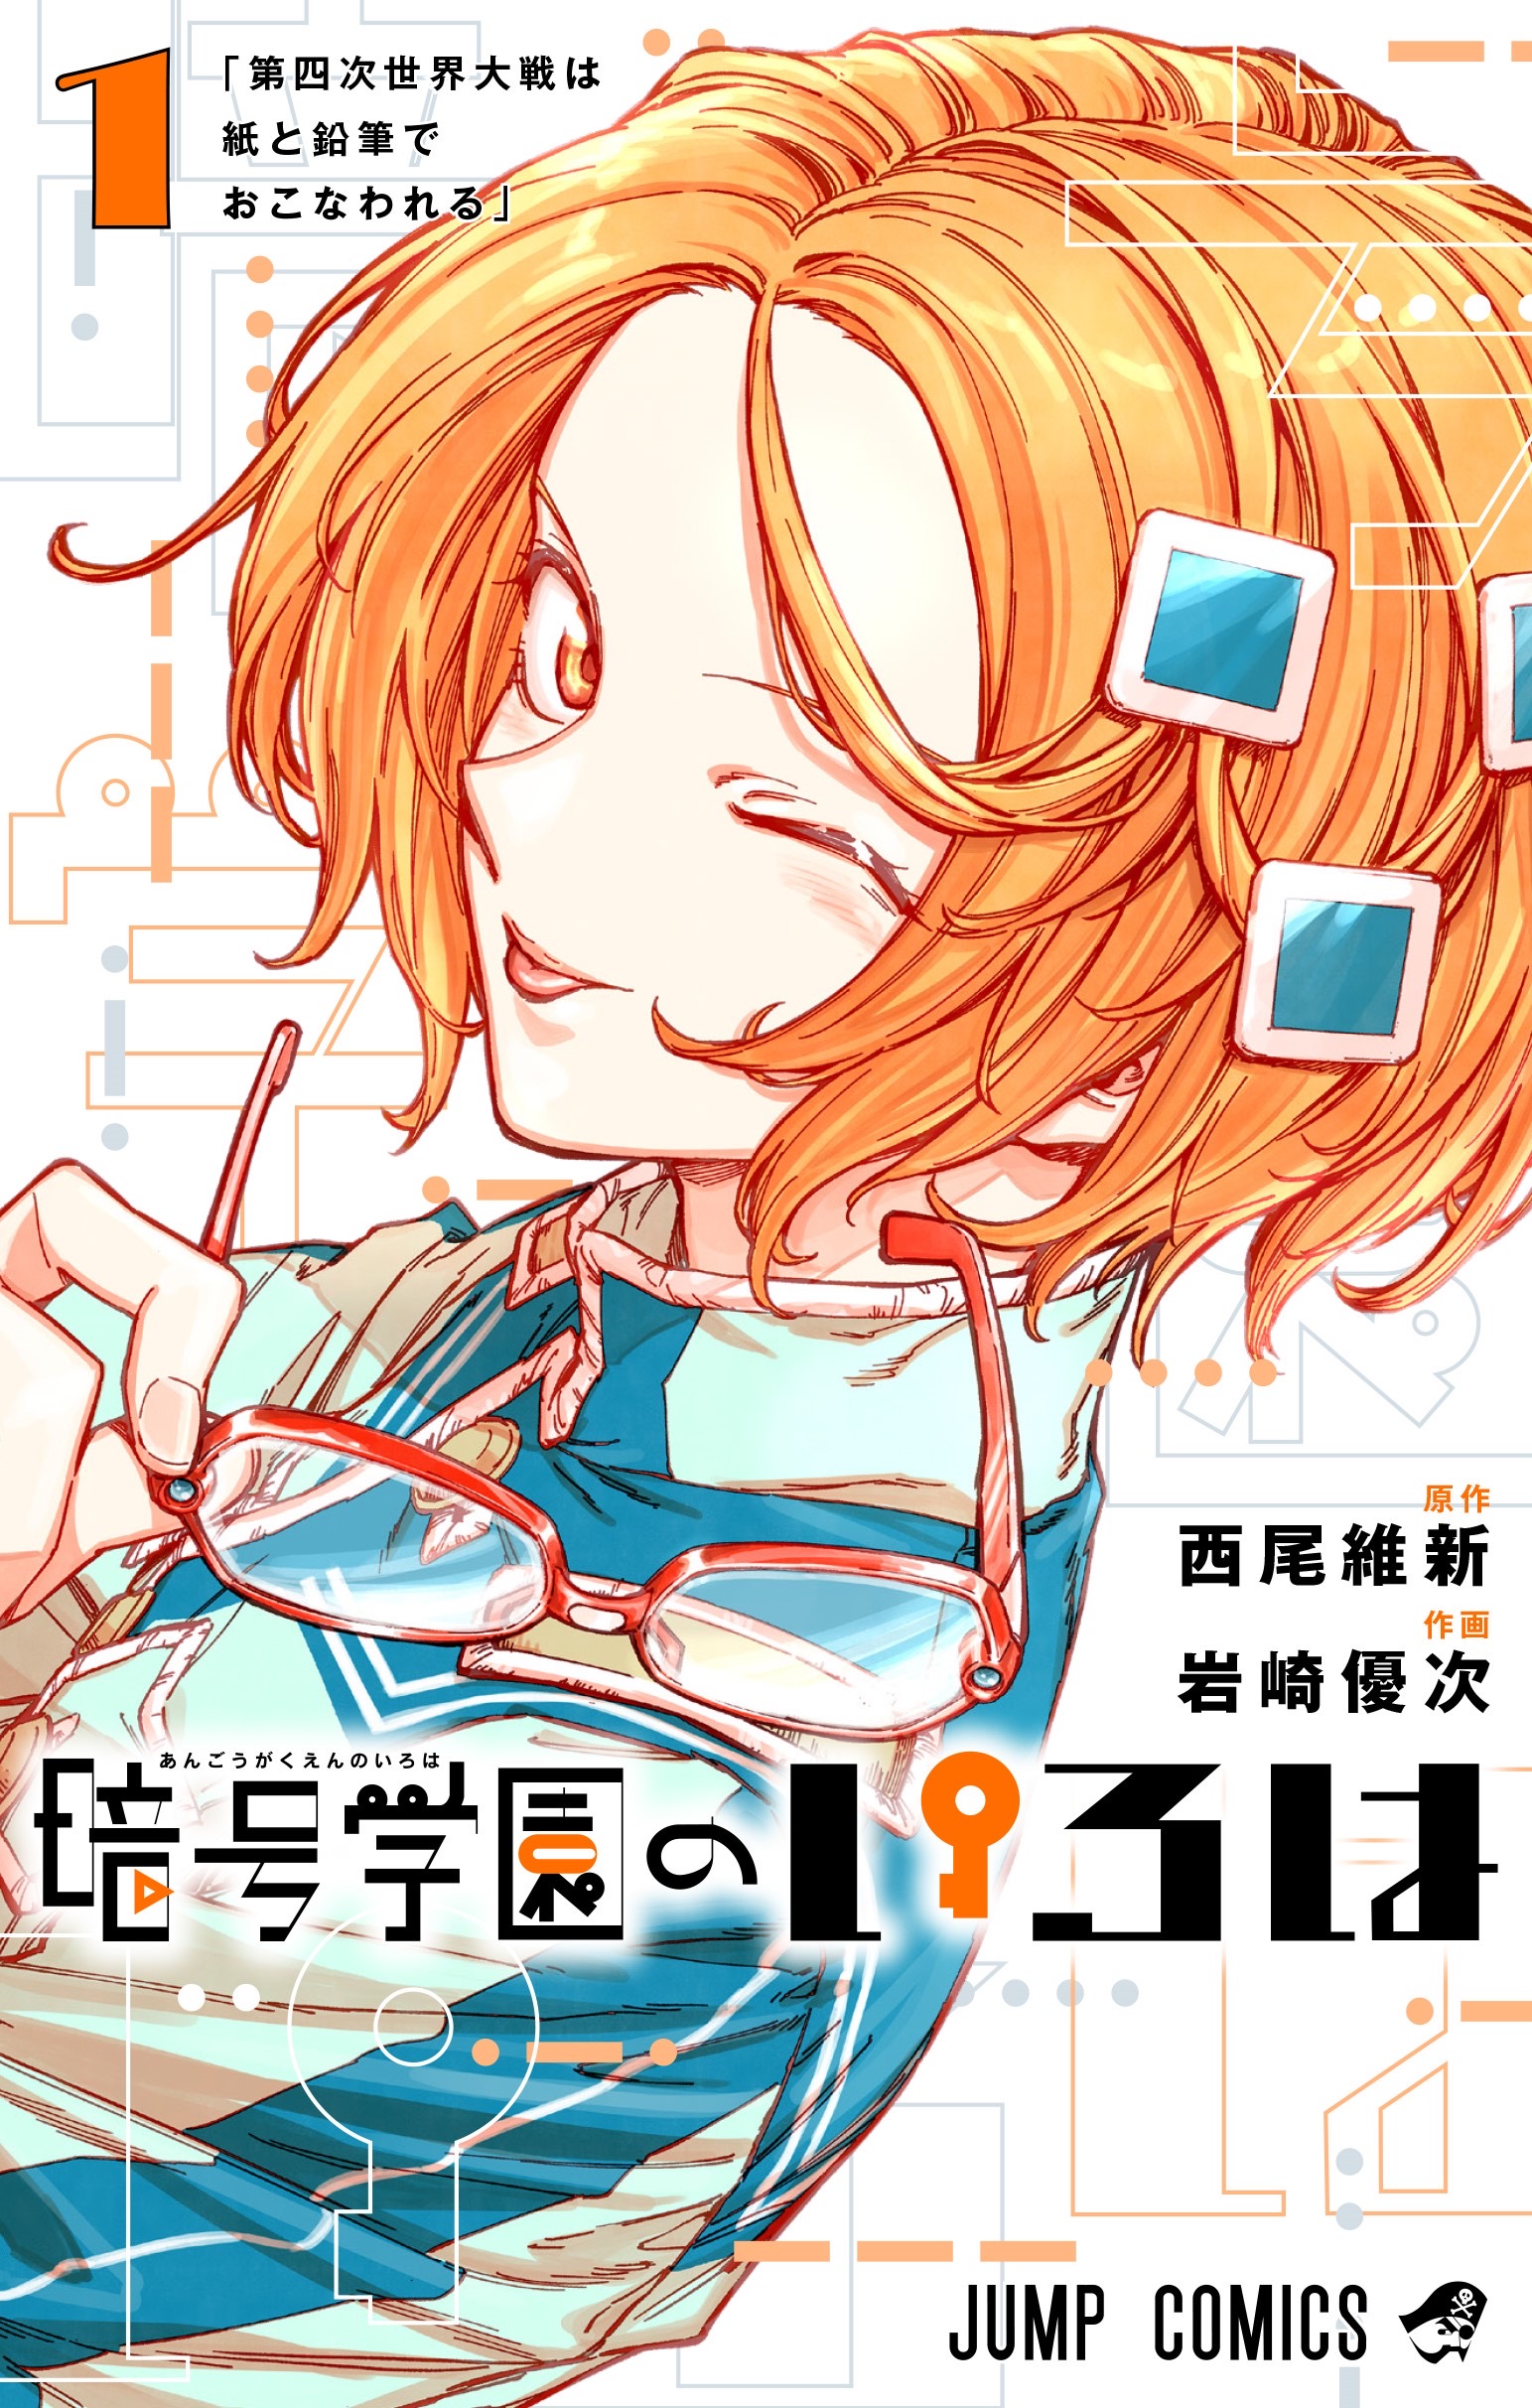 Angou Gakuen no Iroha Manga Cover Volume 1